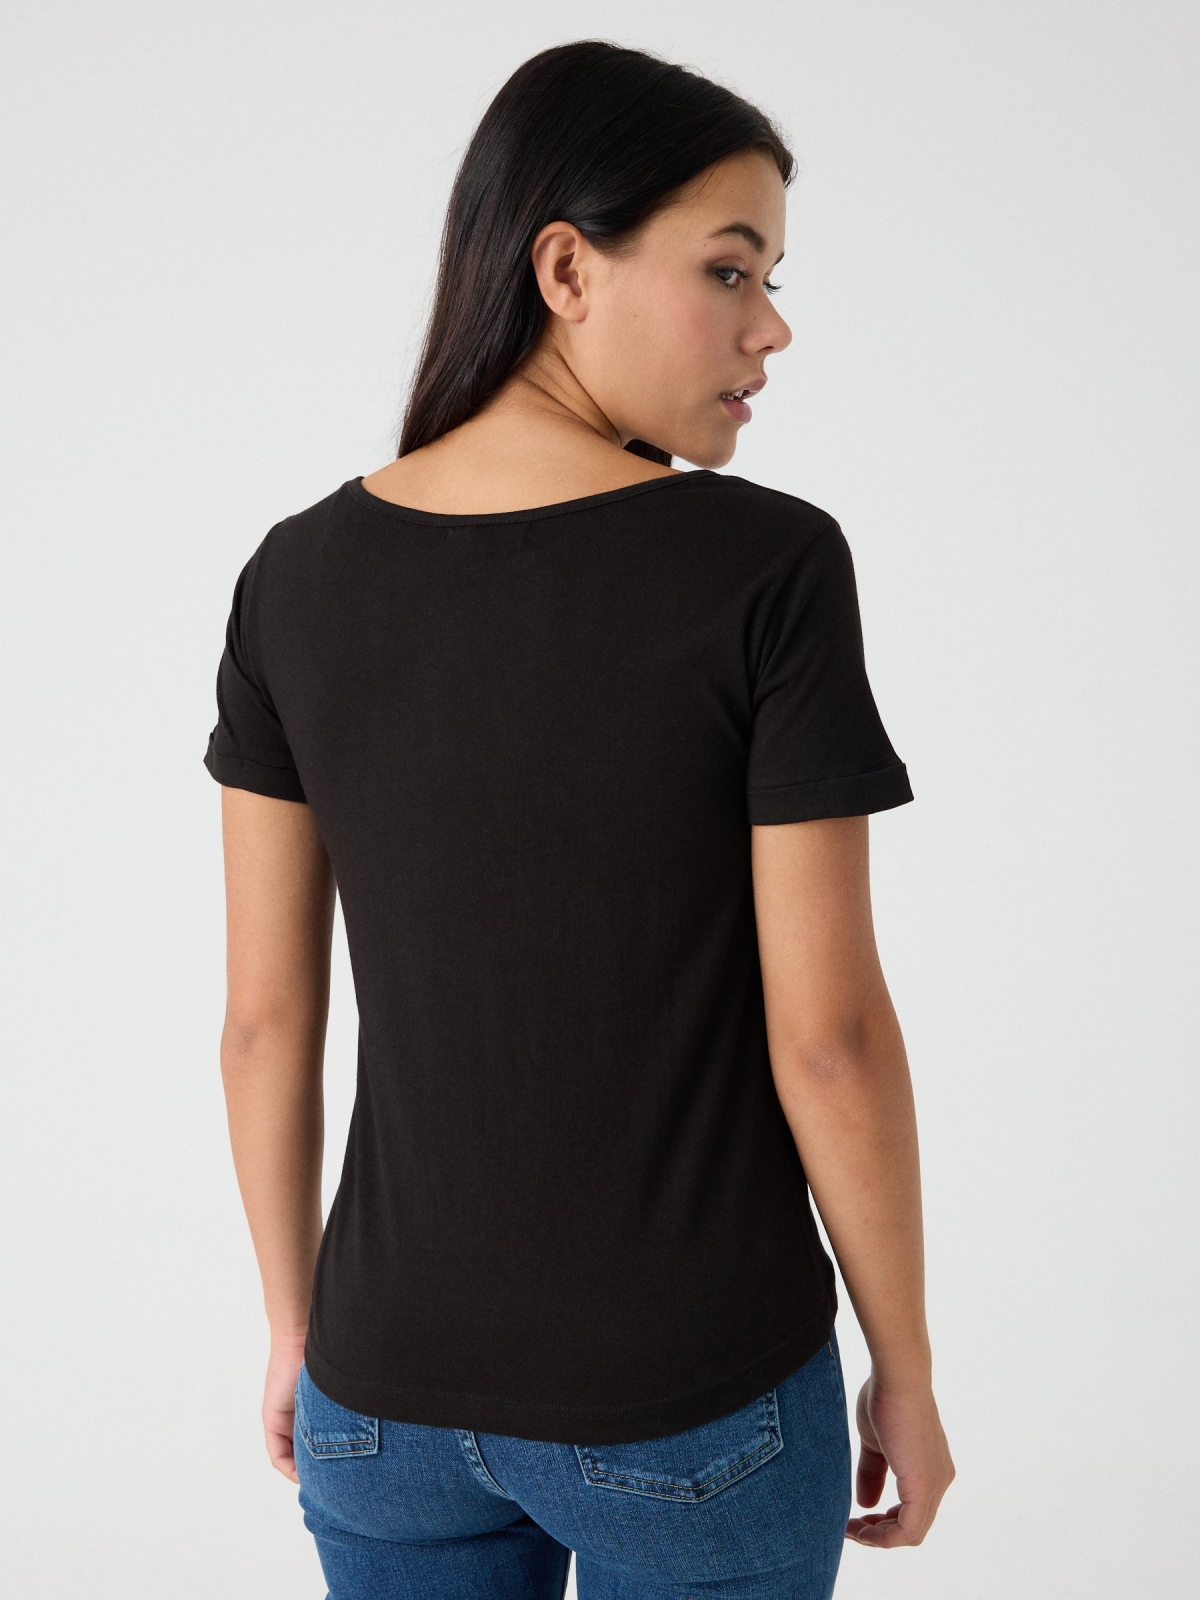 Camiseta con estampado negro vista media trasera